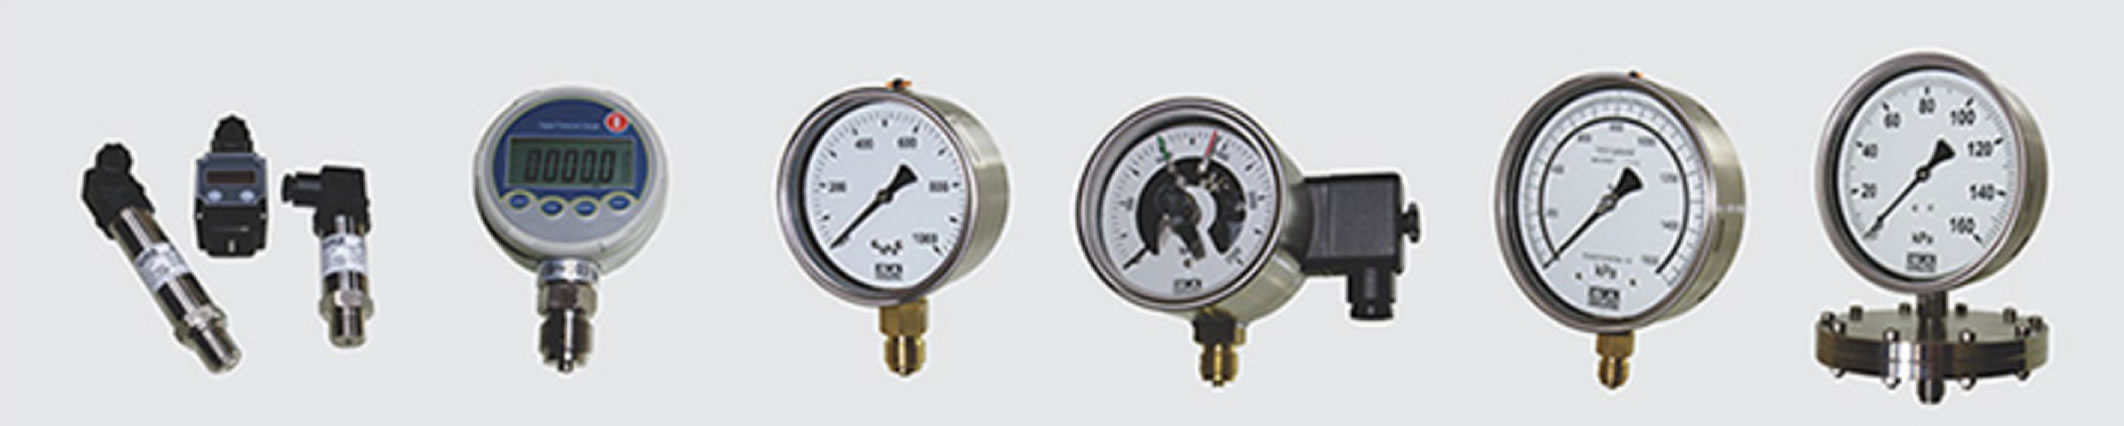 Industrial Pressure gauges